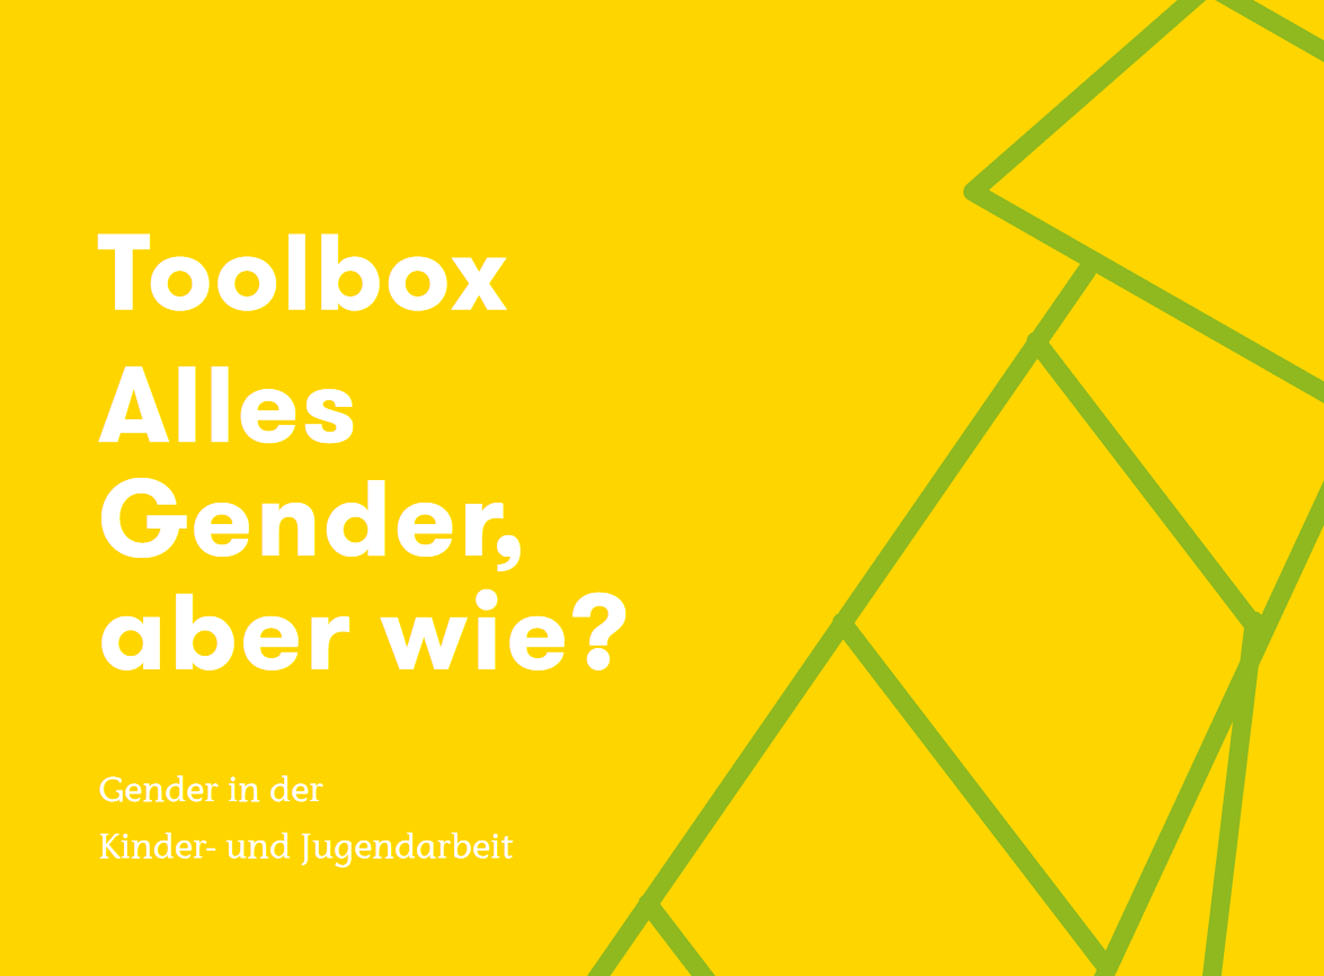 Bild: Toolbox „Alles Gender, aber wie?"